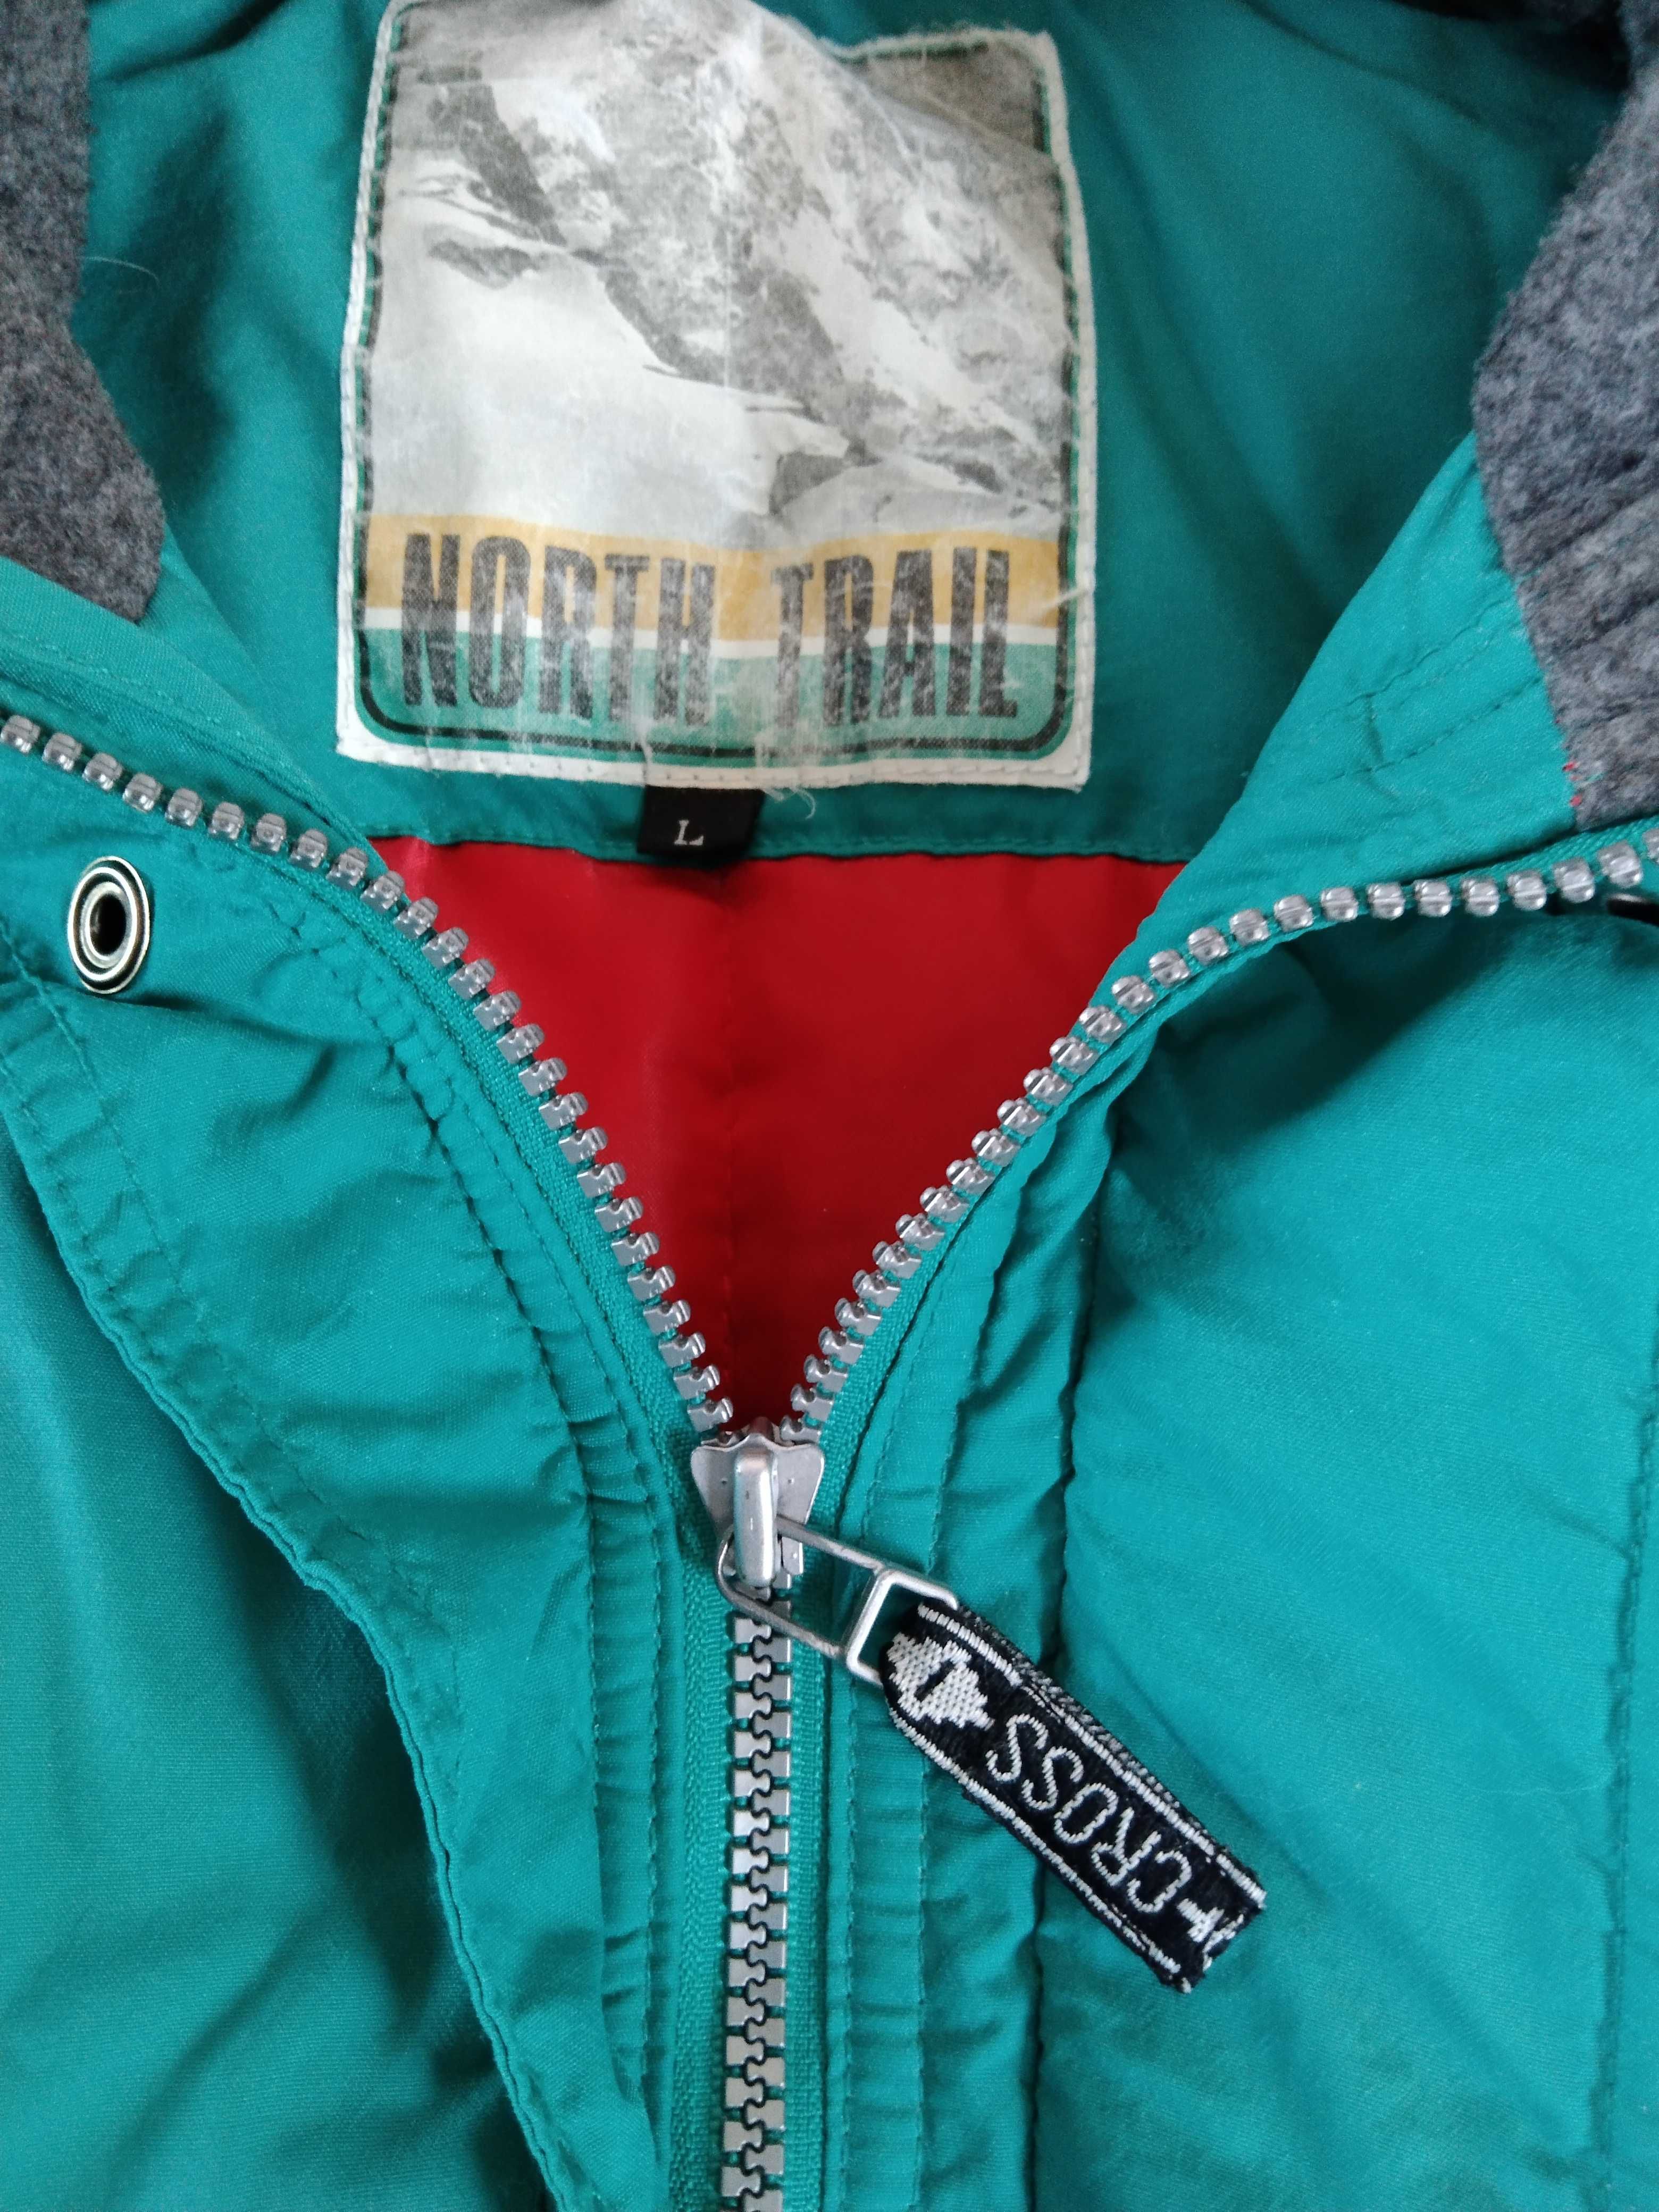 Tanio, kurtka i spodnie narciarskie, kombinezon, snowboard, rozmiar XL